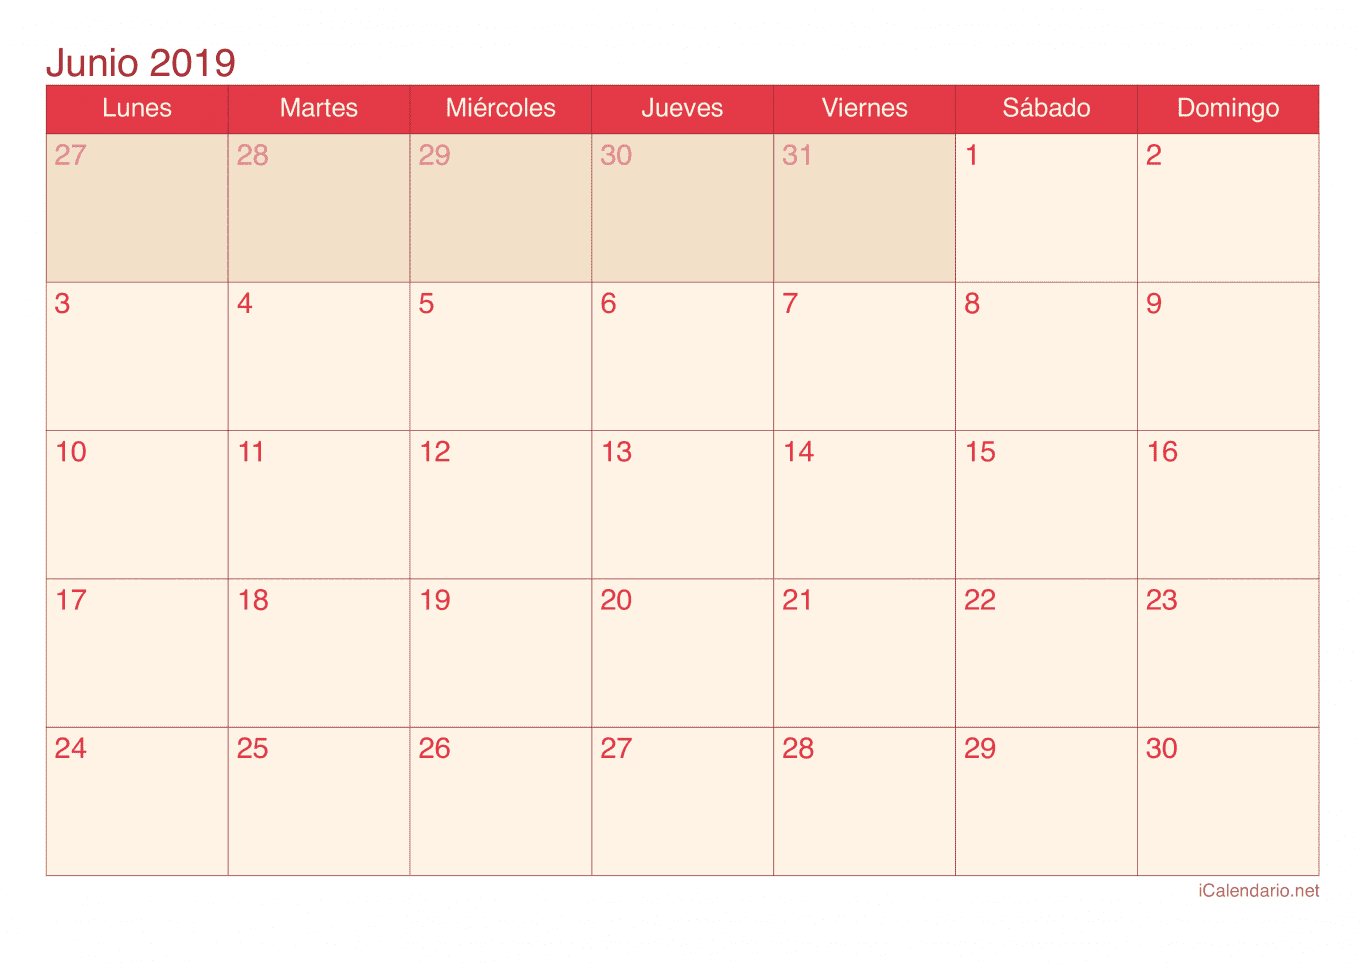 Calendario de junio 2019 - Cherry